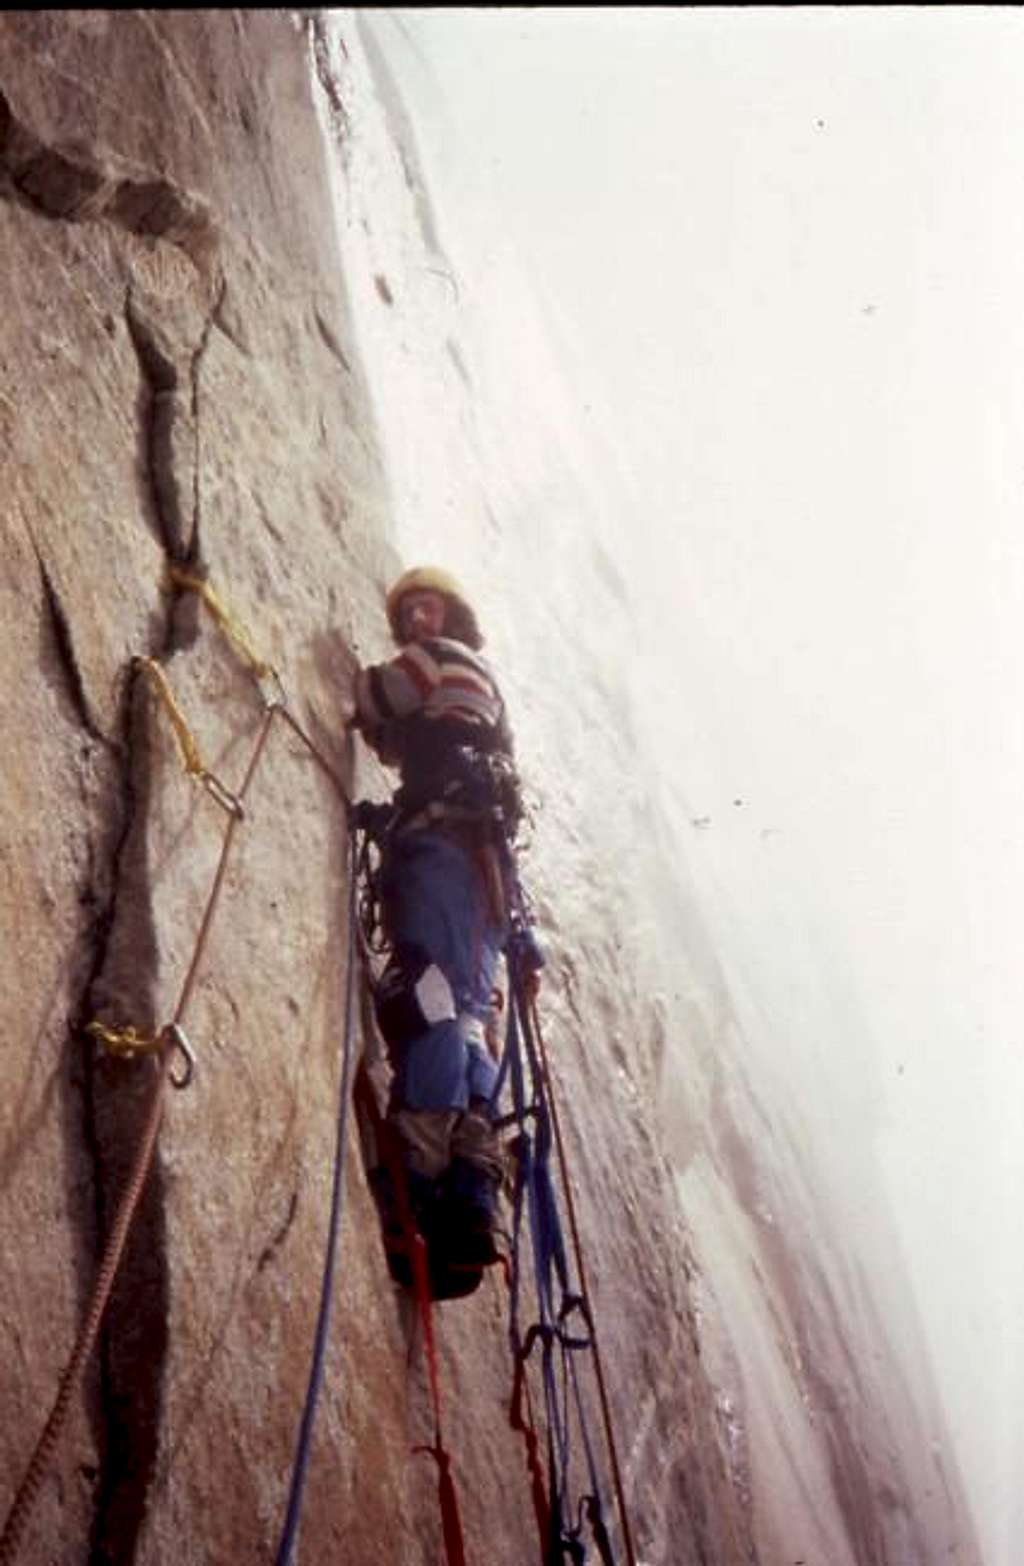 Johnathan Gordon aid climbing...